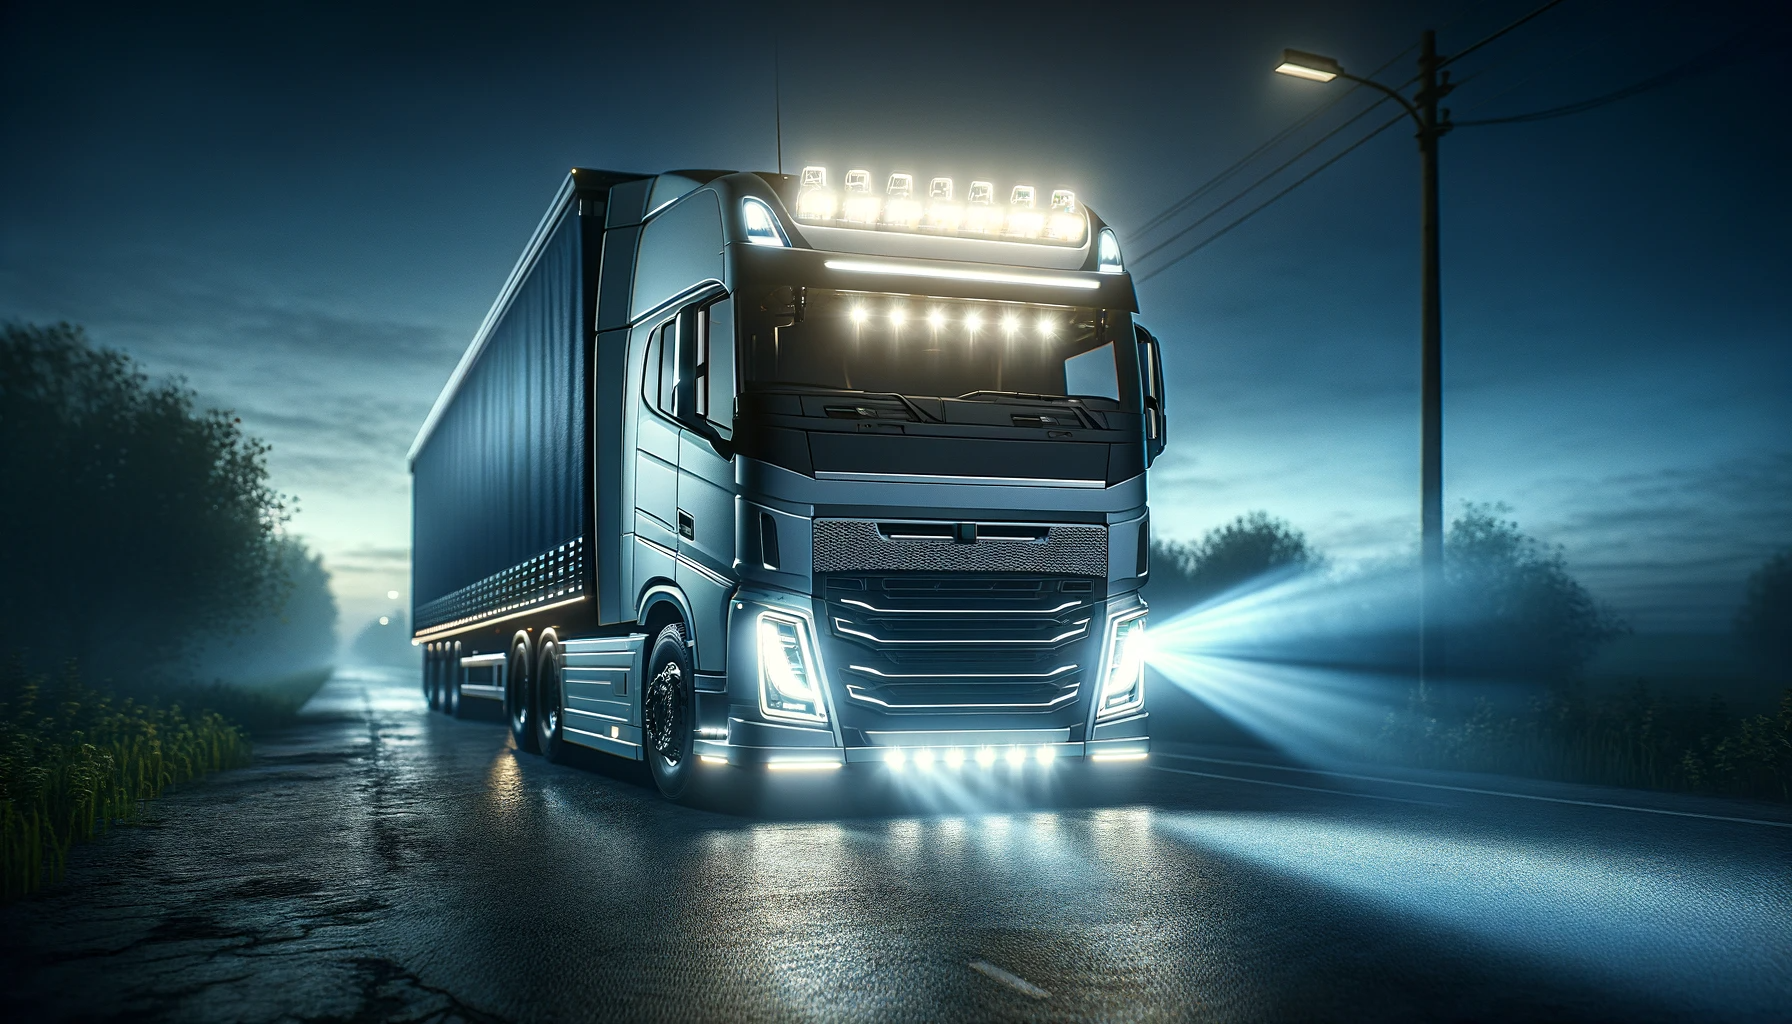 Lumini pentru camion - Faruri LED vs. Xenon vs. Halogen